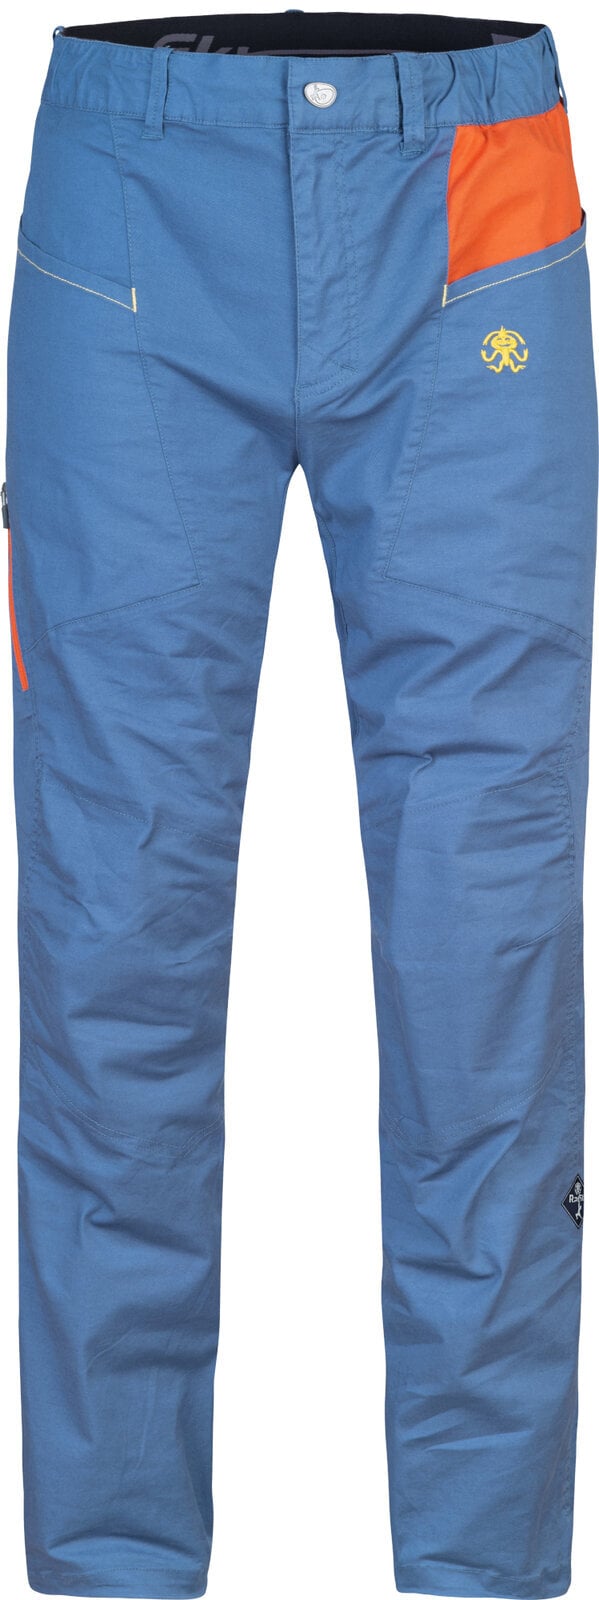 Pantalones para exteriores Rafiki Crag Man Pants Ensign Blue/Clay XL Pantalones para exteriores